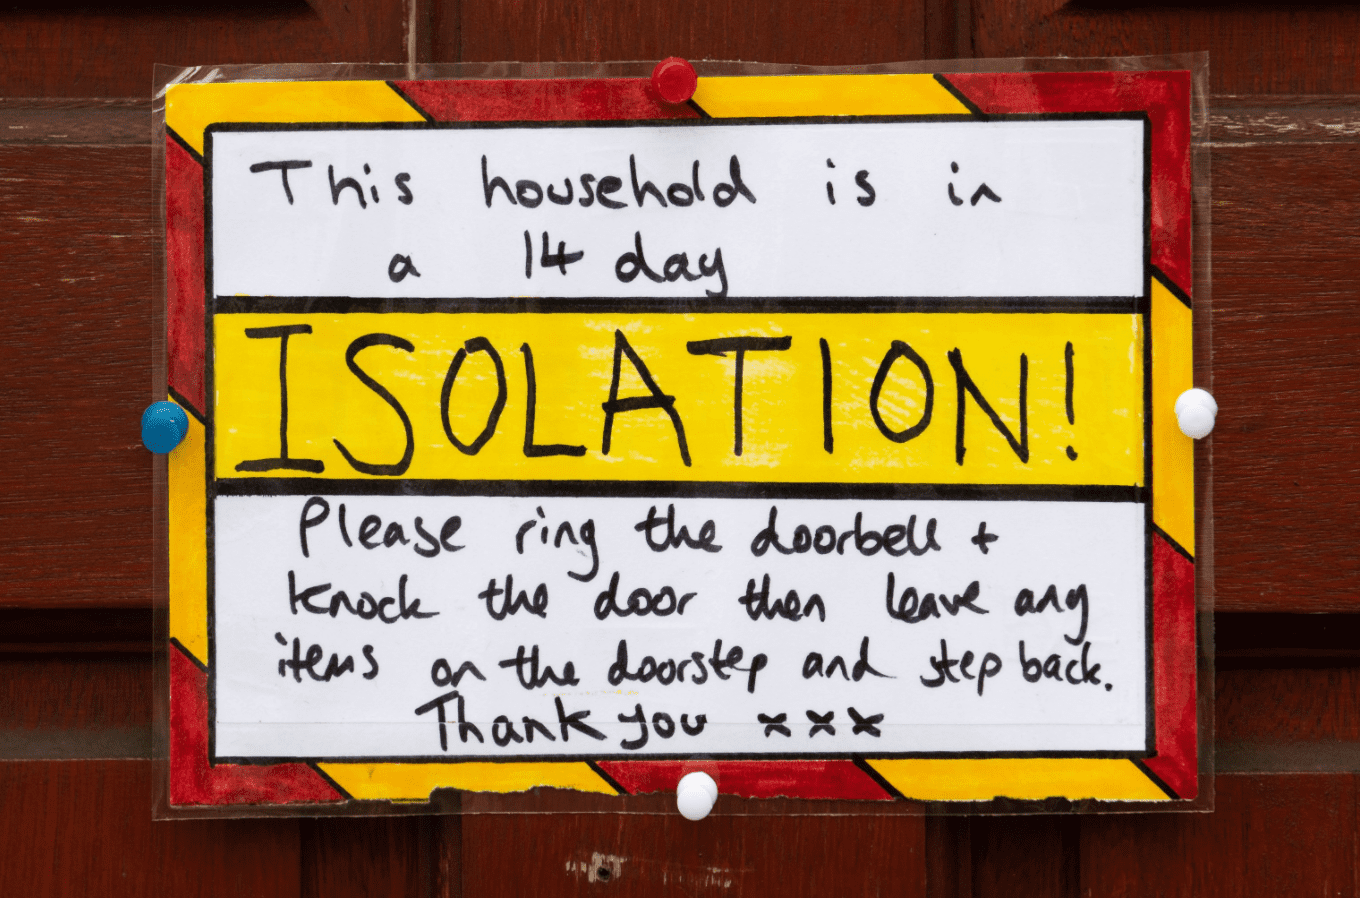 Une pancarte d'une propriété Résidentielle, sur laquelle est écrit isolé pendant 14 jours | Photo : Getty Images